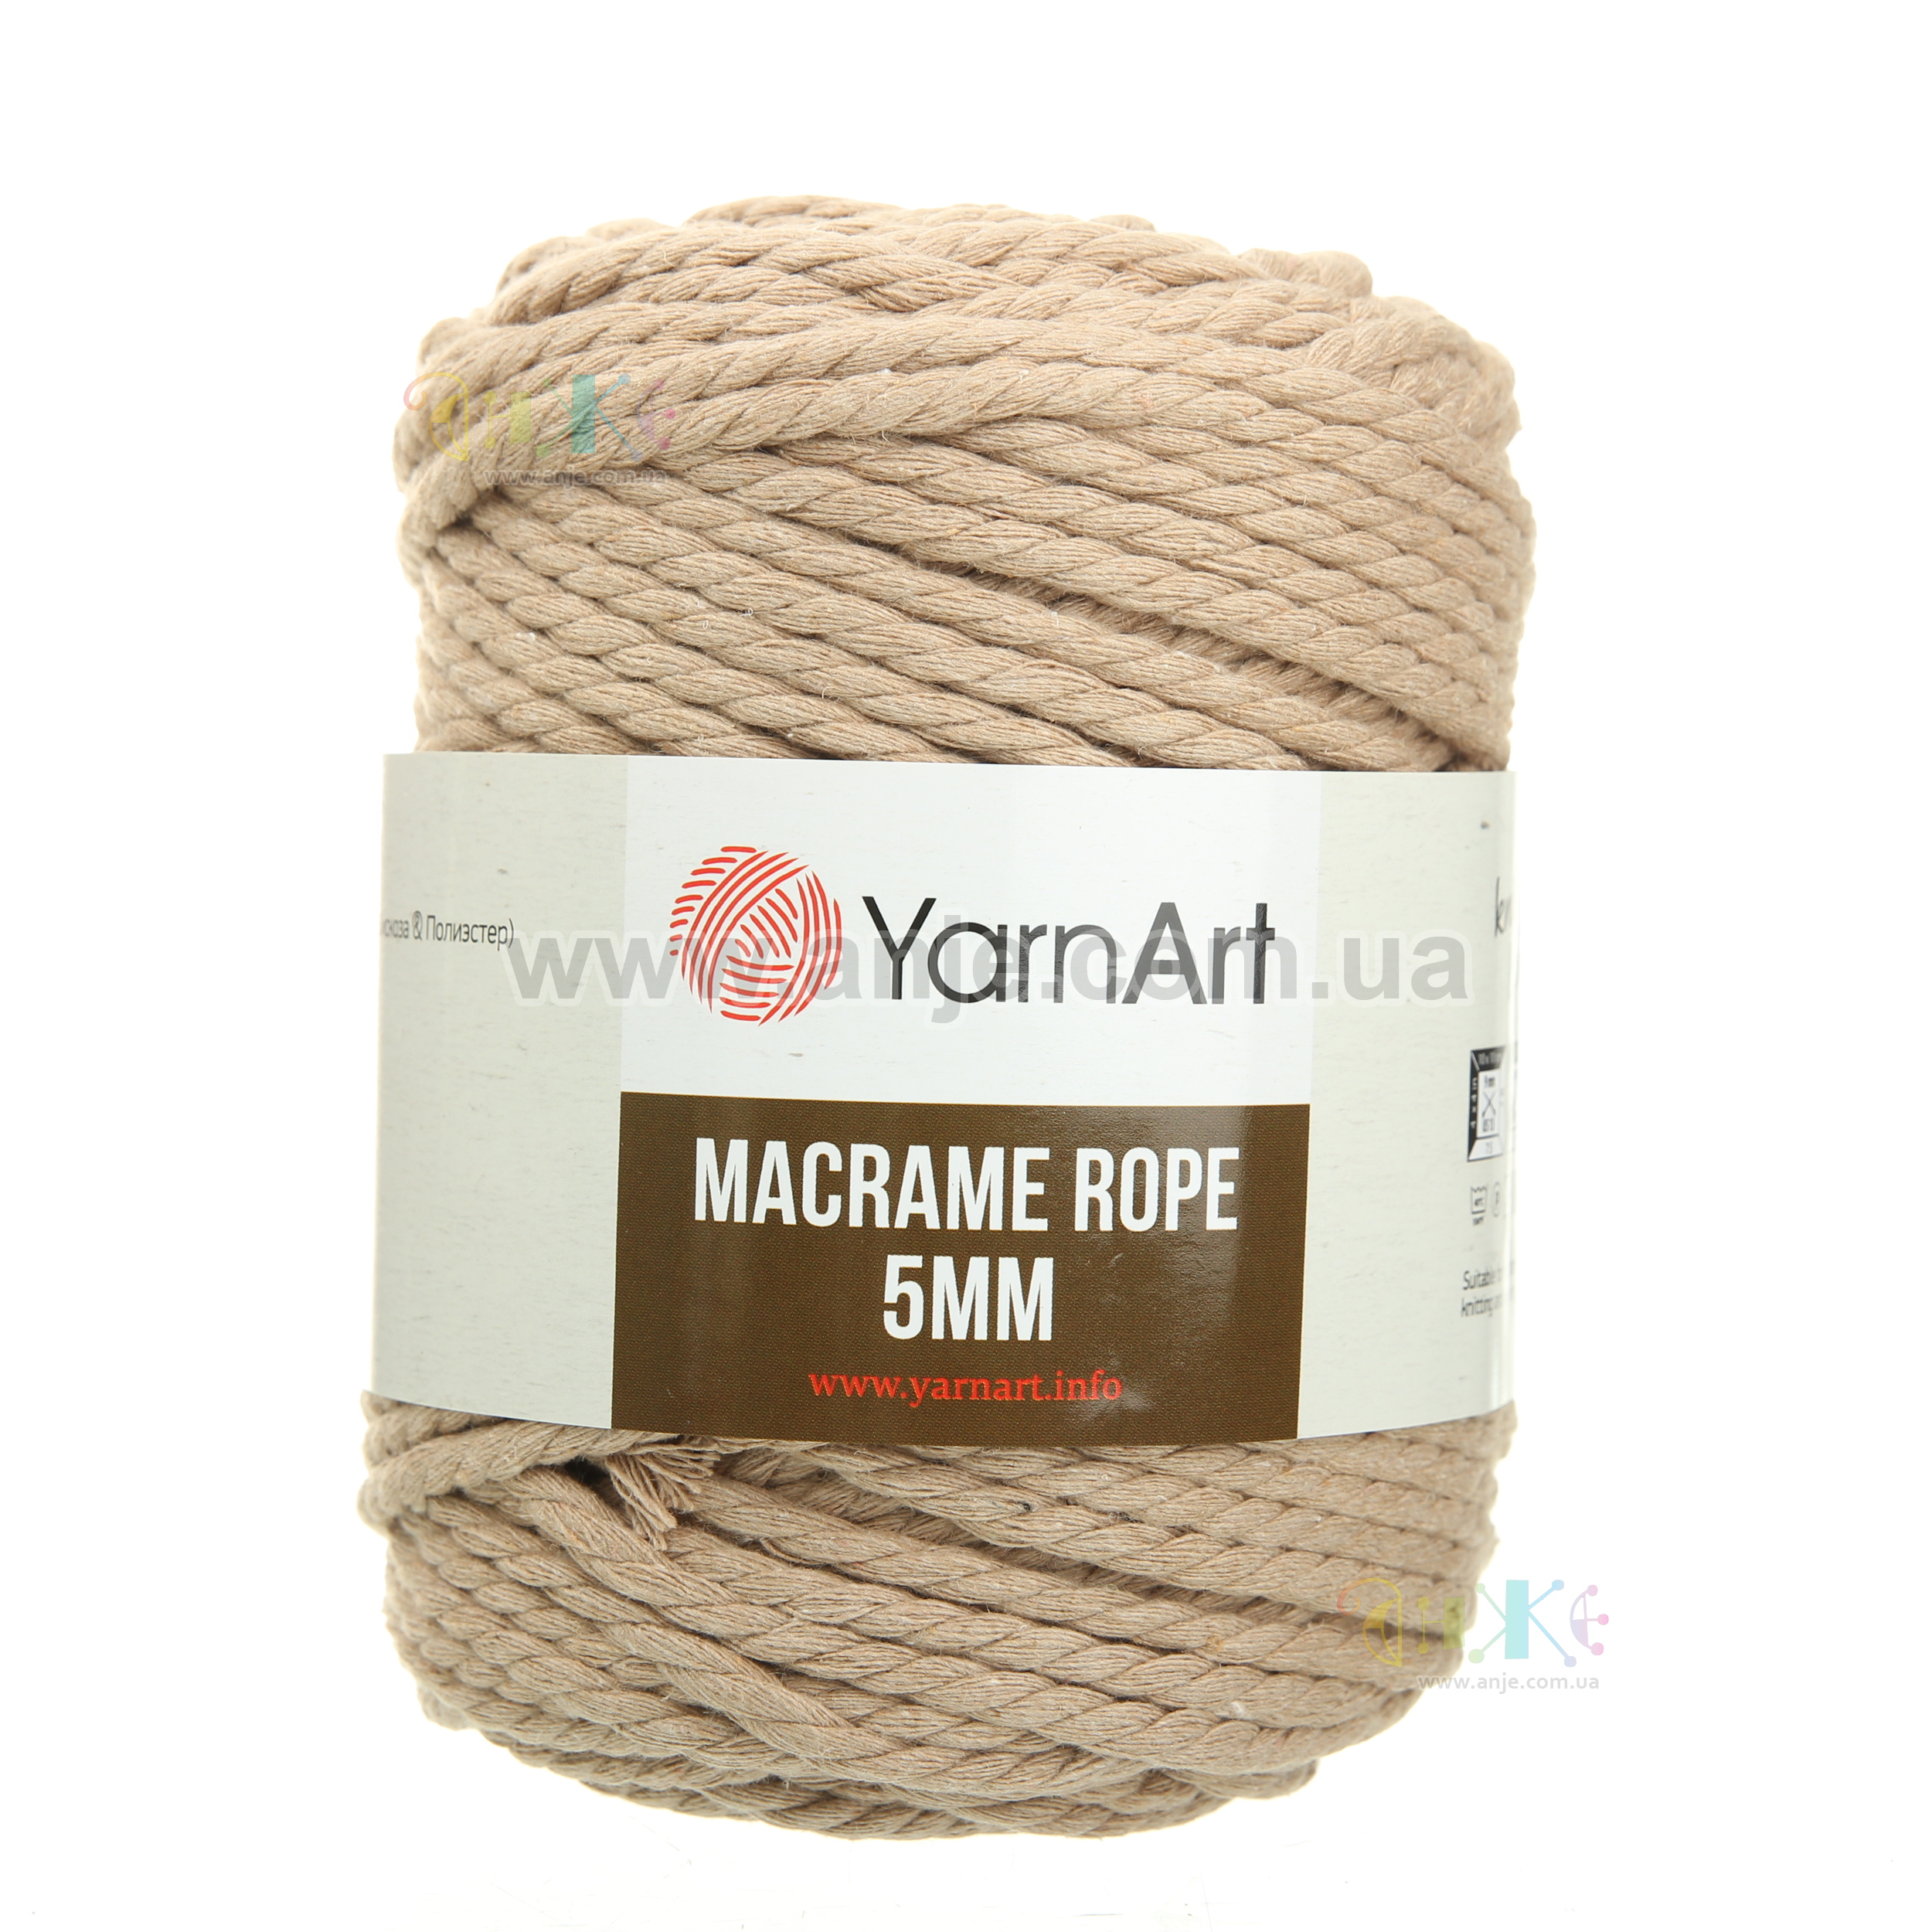 YARNART MACRAME ROPE 5 MM - MACRAME CORD